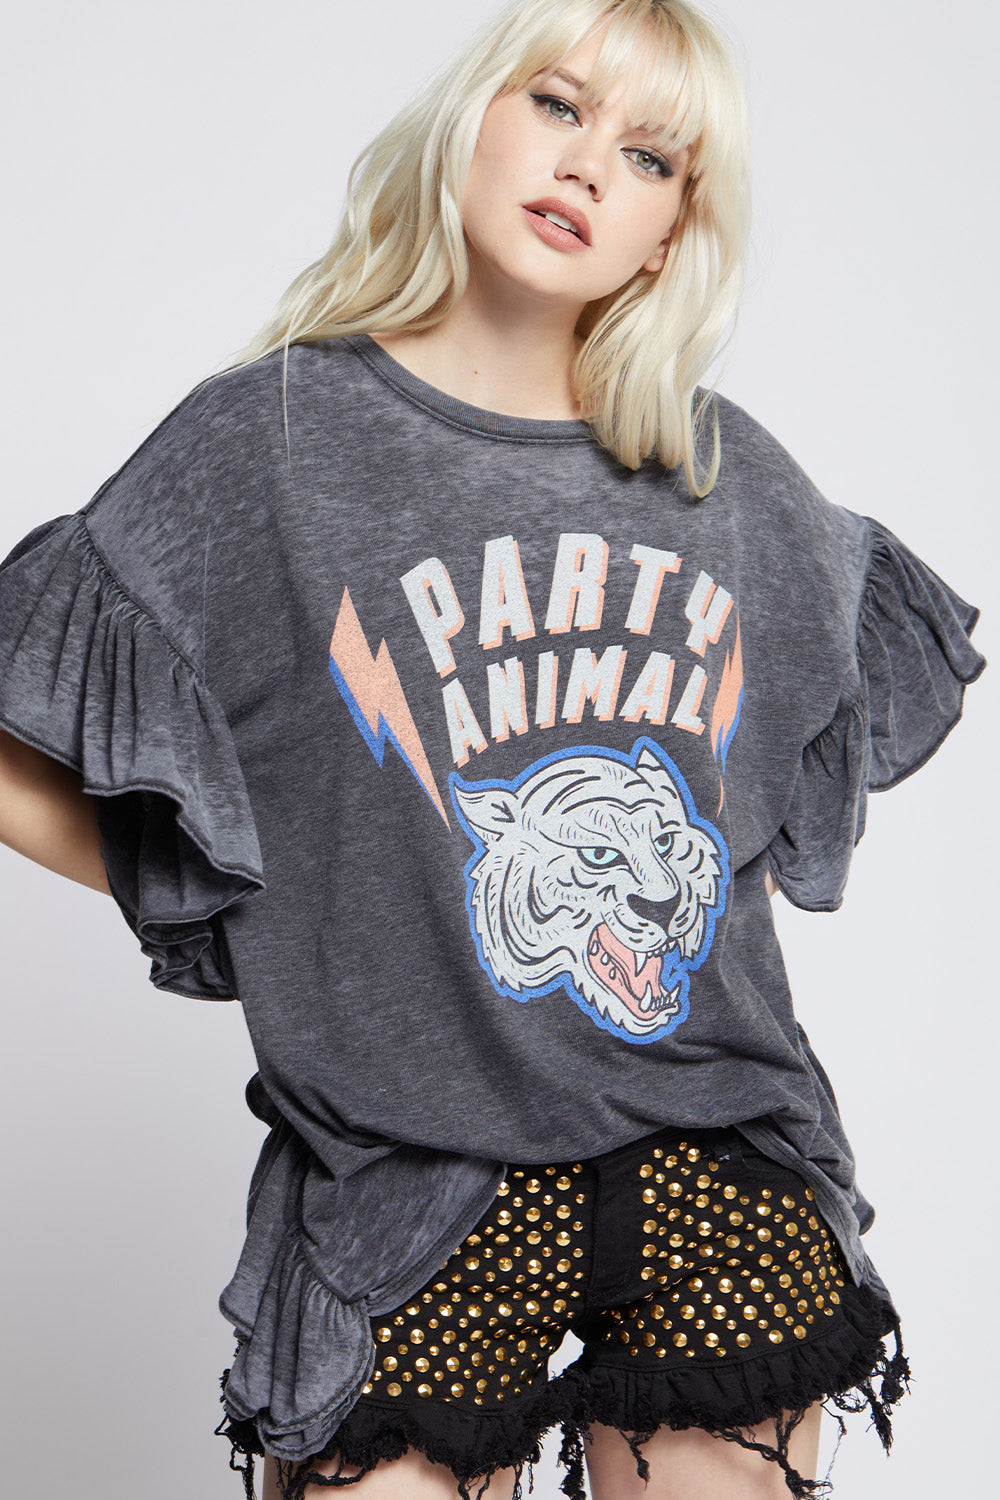 Easy Tiger Vintage Sweatshirt - Recycled Karma Brands